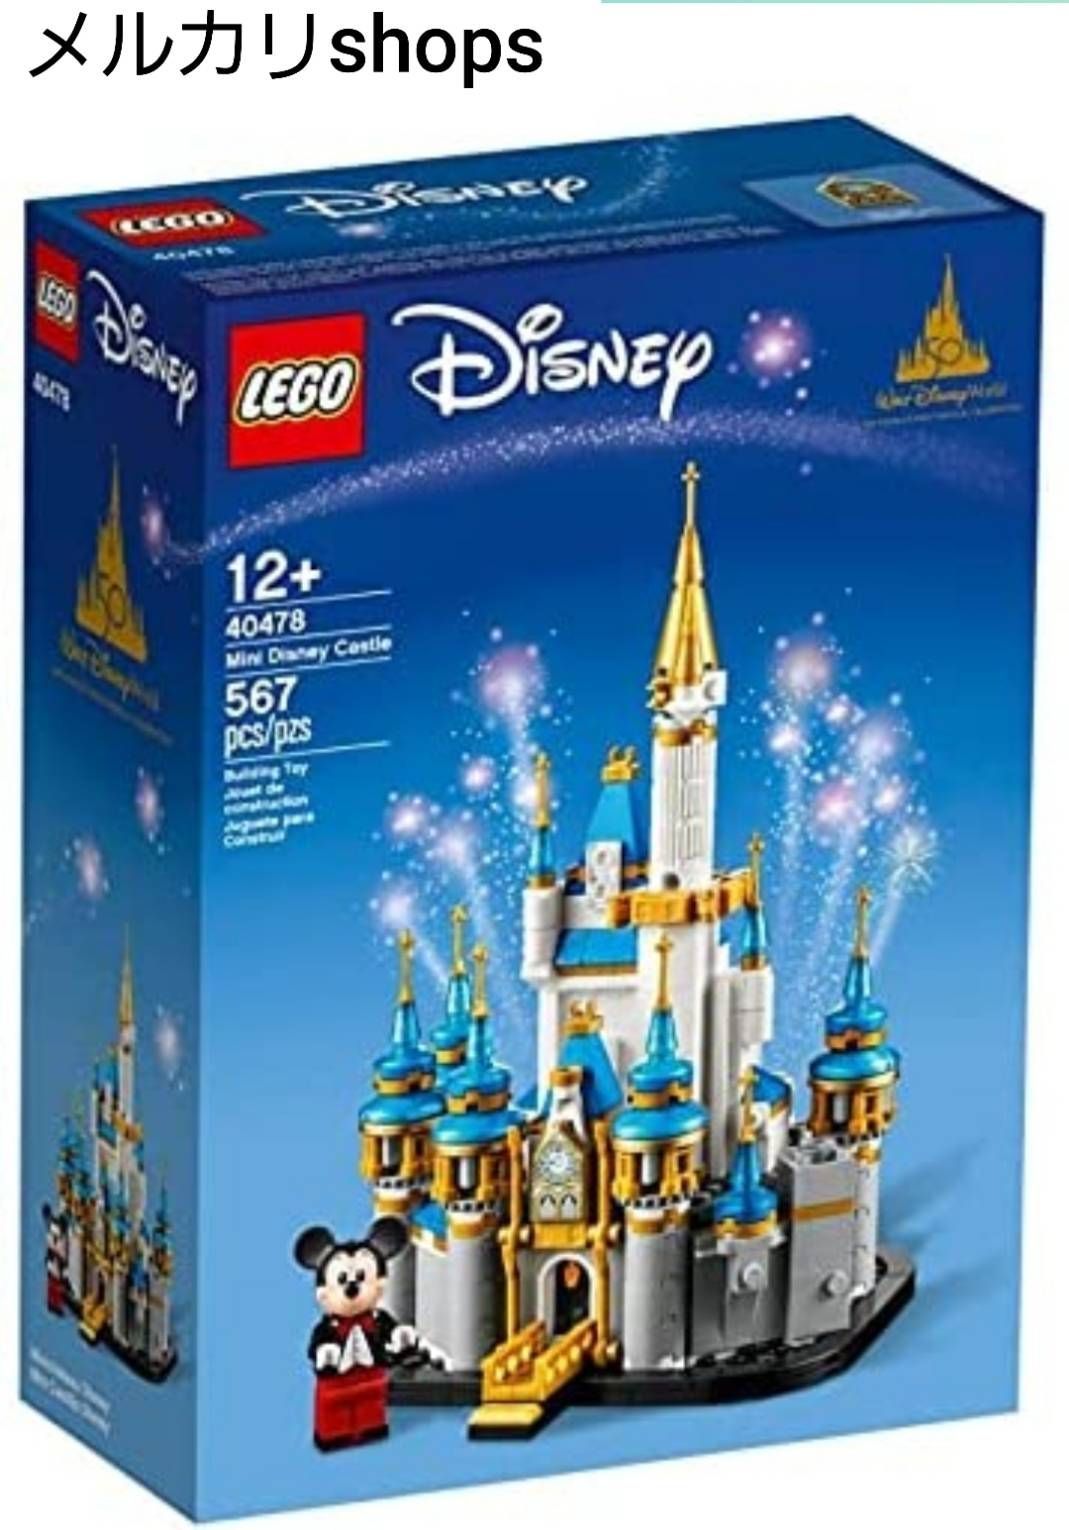 正規品 新品未開封 LEGO 71040 ディズニーキャッスル シンデレラ城